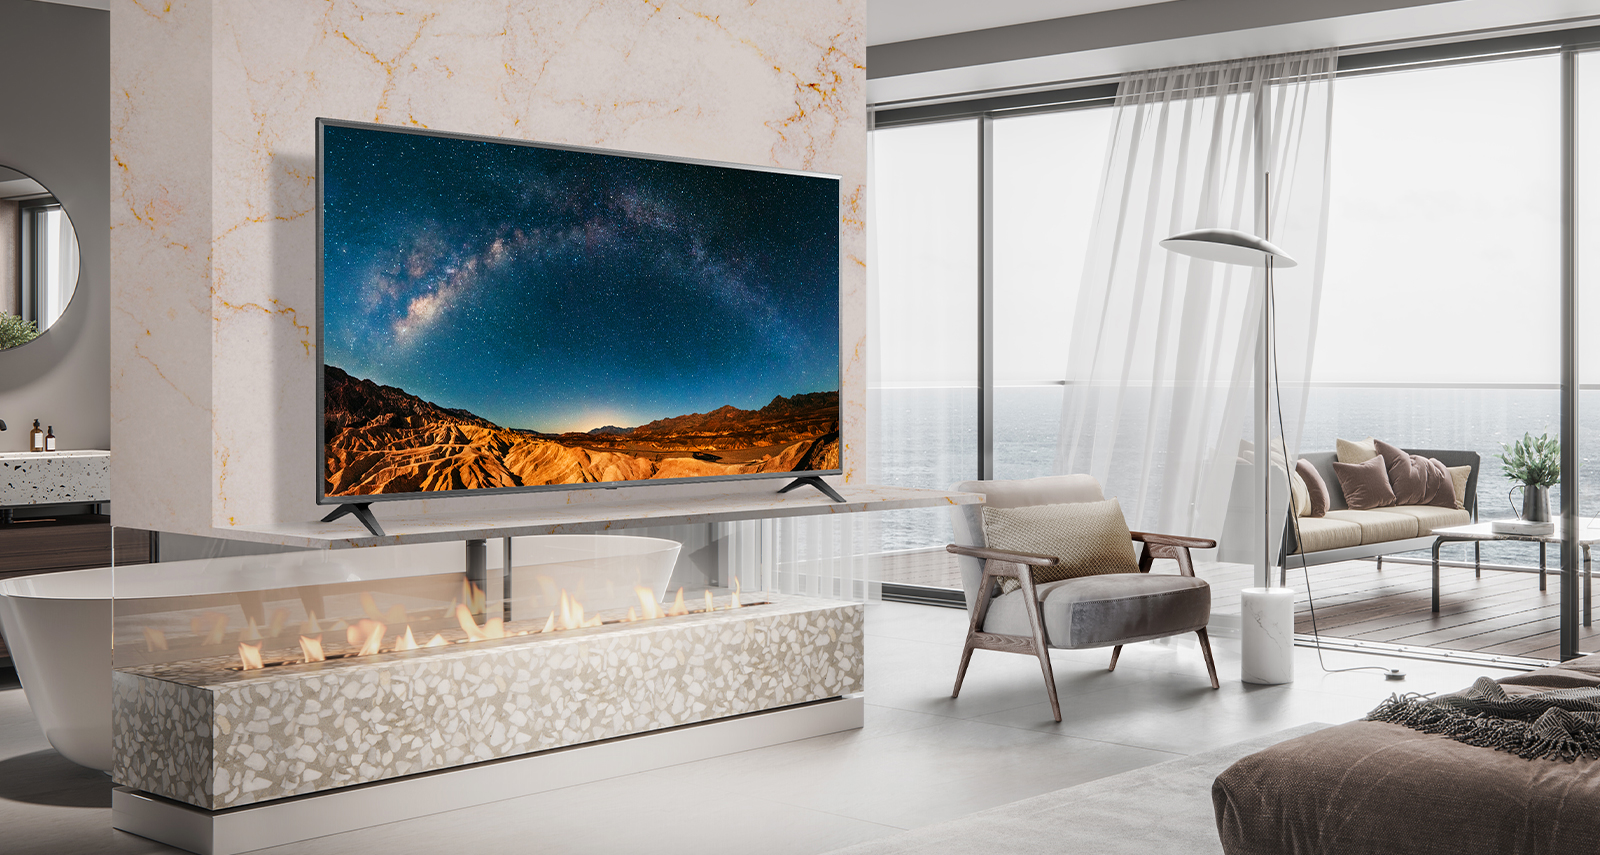 W prostej sypialni z widokiem na morze na półce ściennej znajduje się telewizor.  Krajobraz błękitnego morza jest jasny i wyraźny na ekranie telewizora.